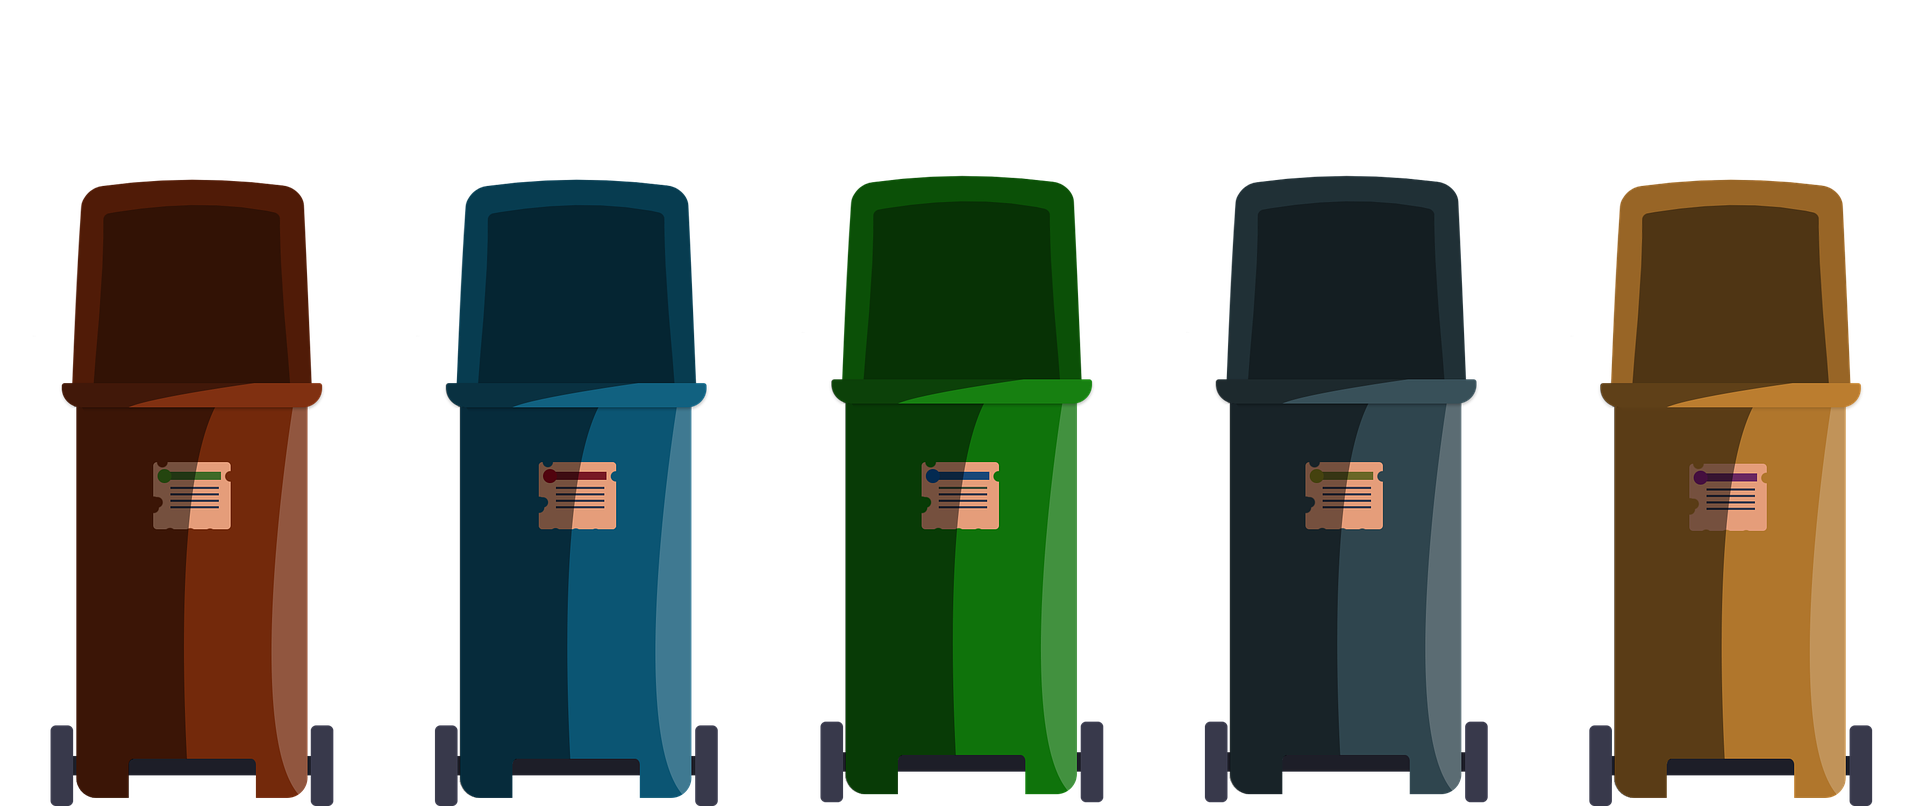 Pięć pojemników na odpady w kolorze brązowym, niebieskim, zielonym, siwym oraz żółtym